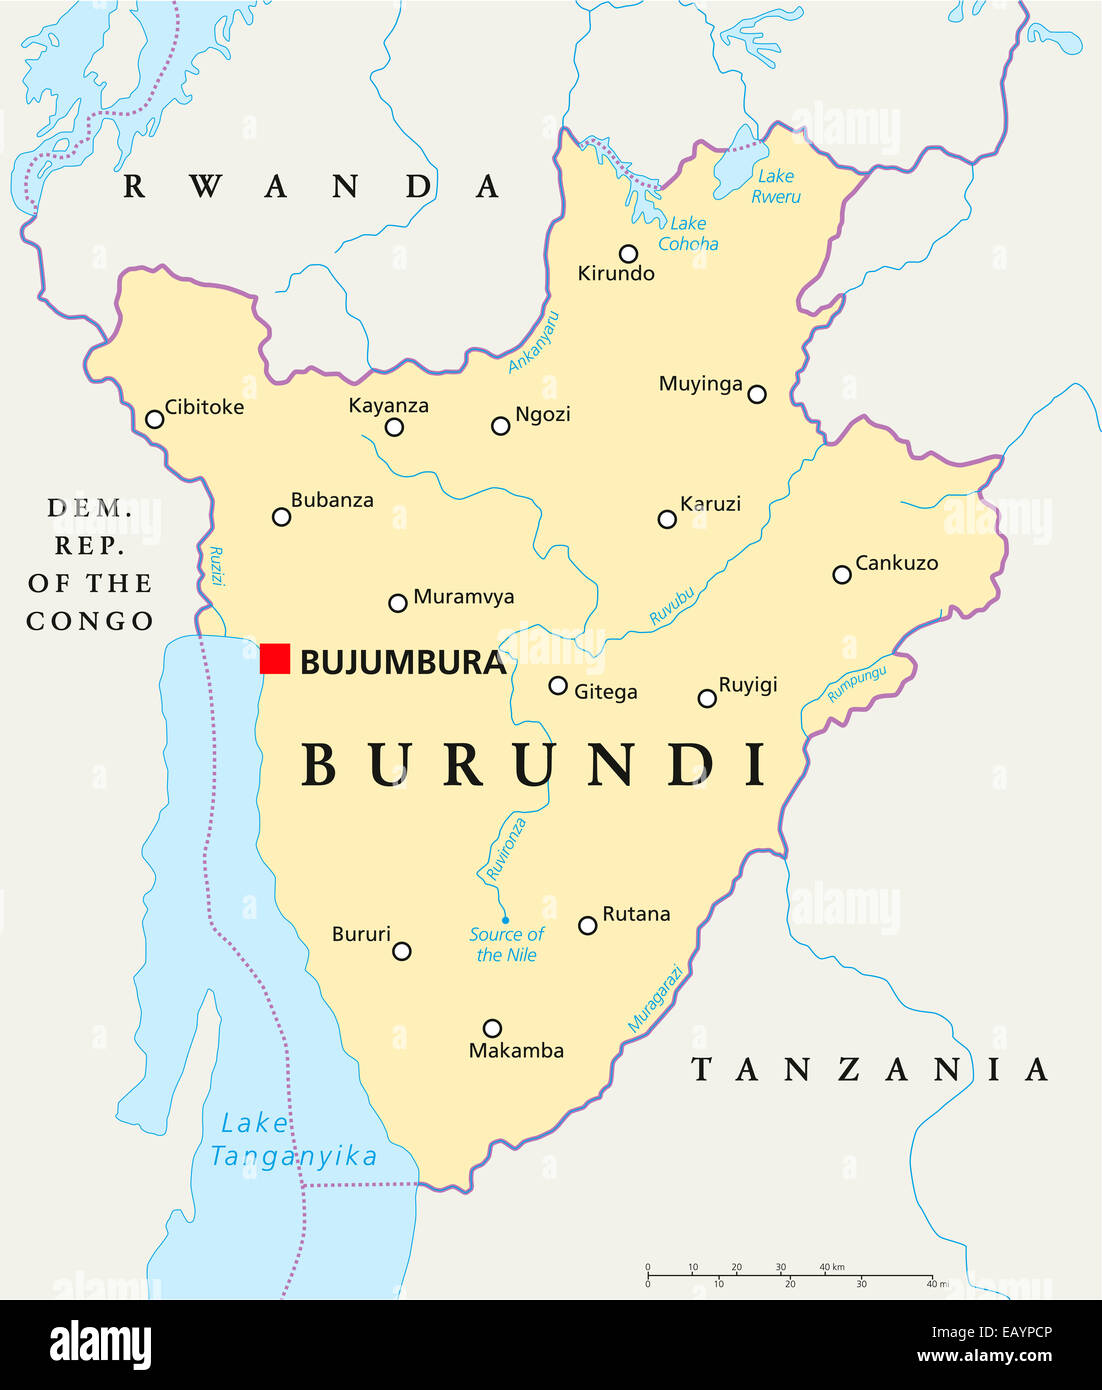 Burundi Mappa Politico con capitale Bujumbura, i confini nazionali, importanti città, fiumi e laghi. Etichetta inglese e la scalabilità Foto Stock